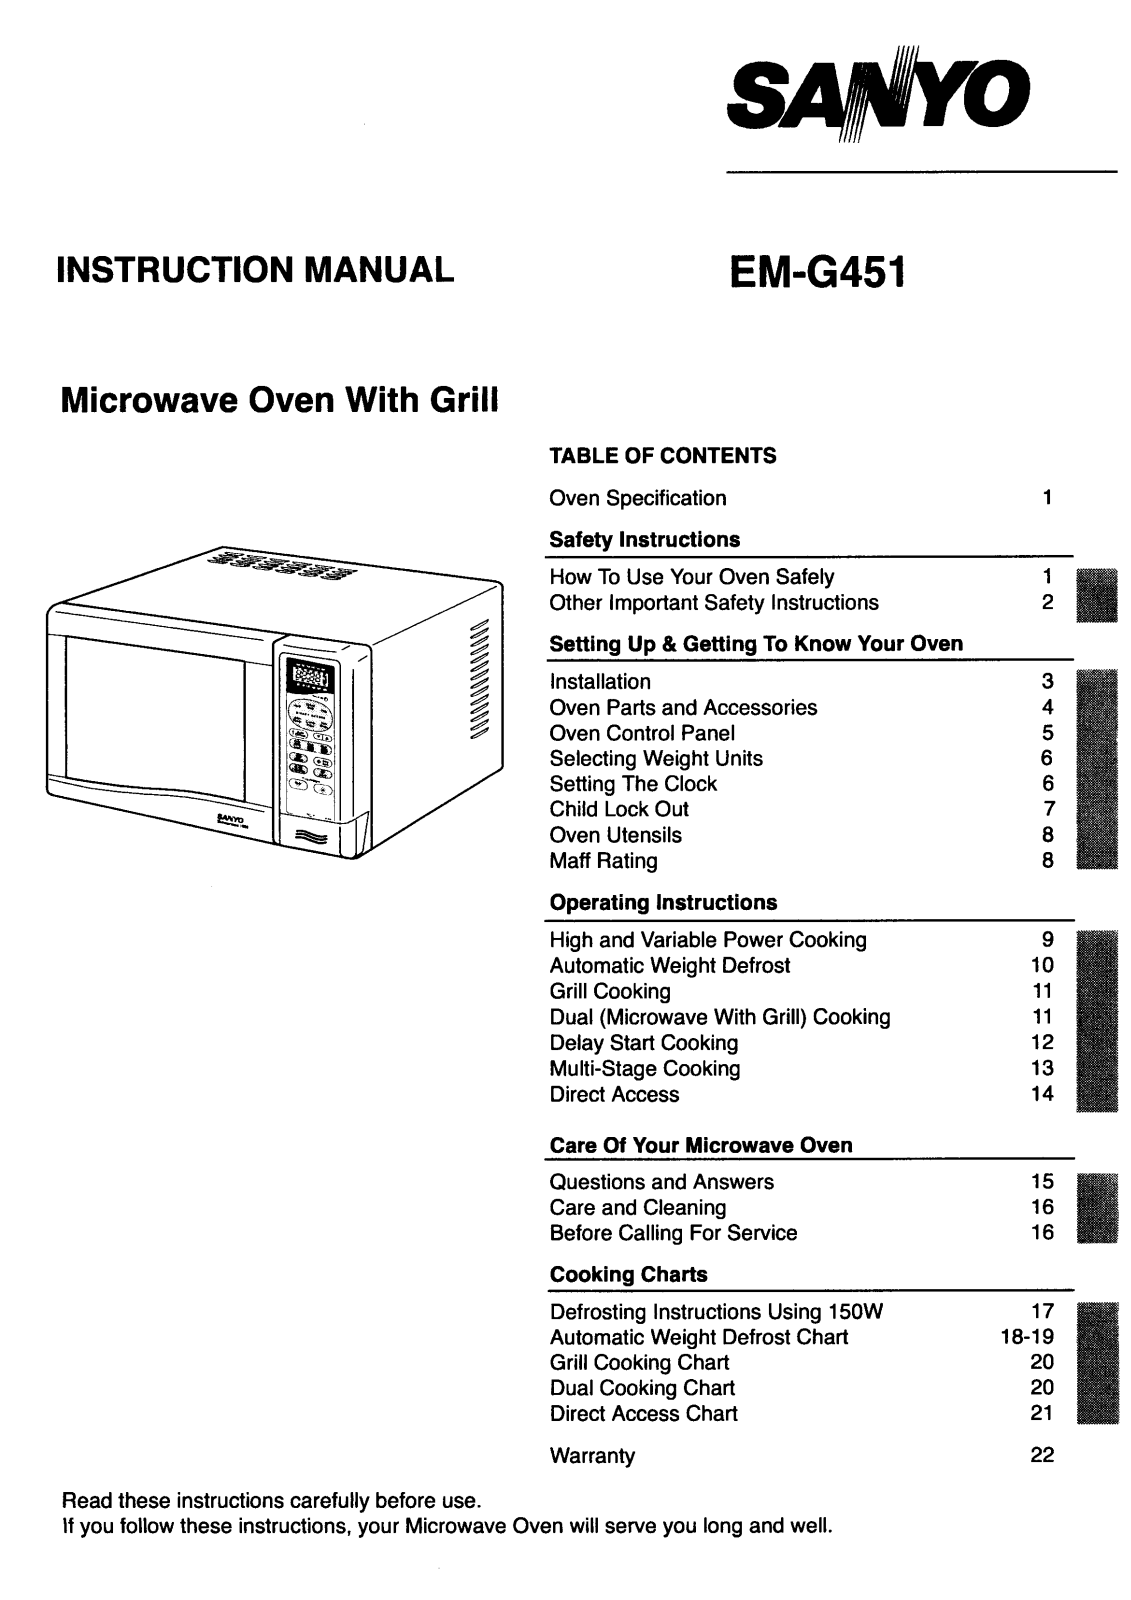 Sanyo EM-G451 Instruction Manual